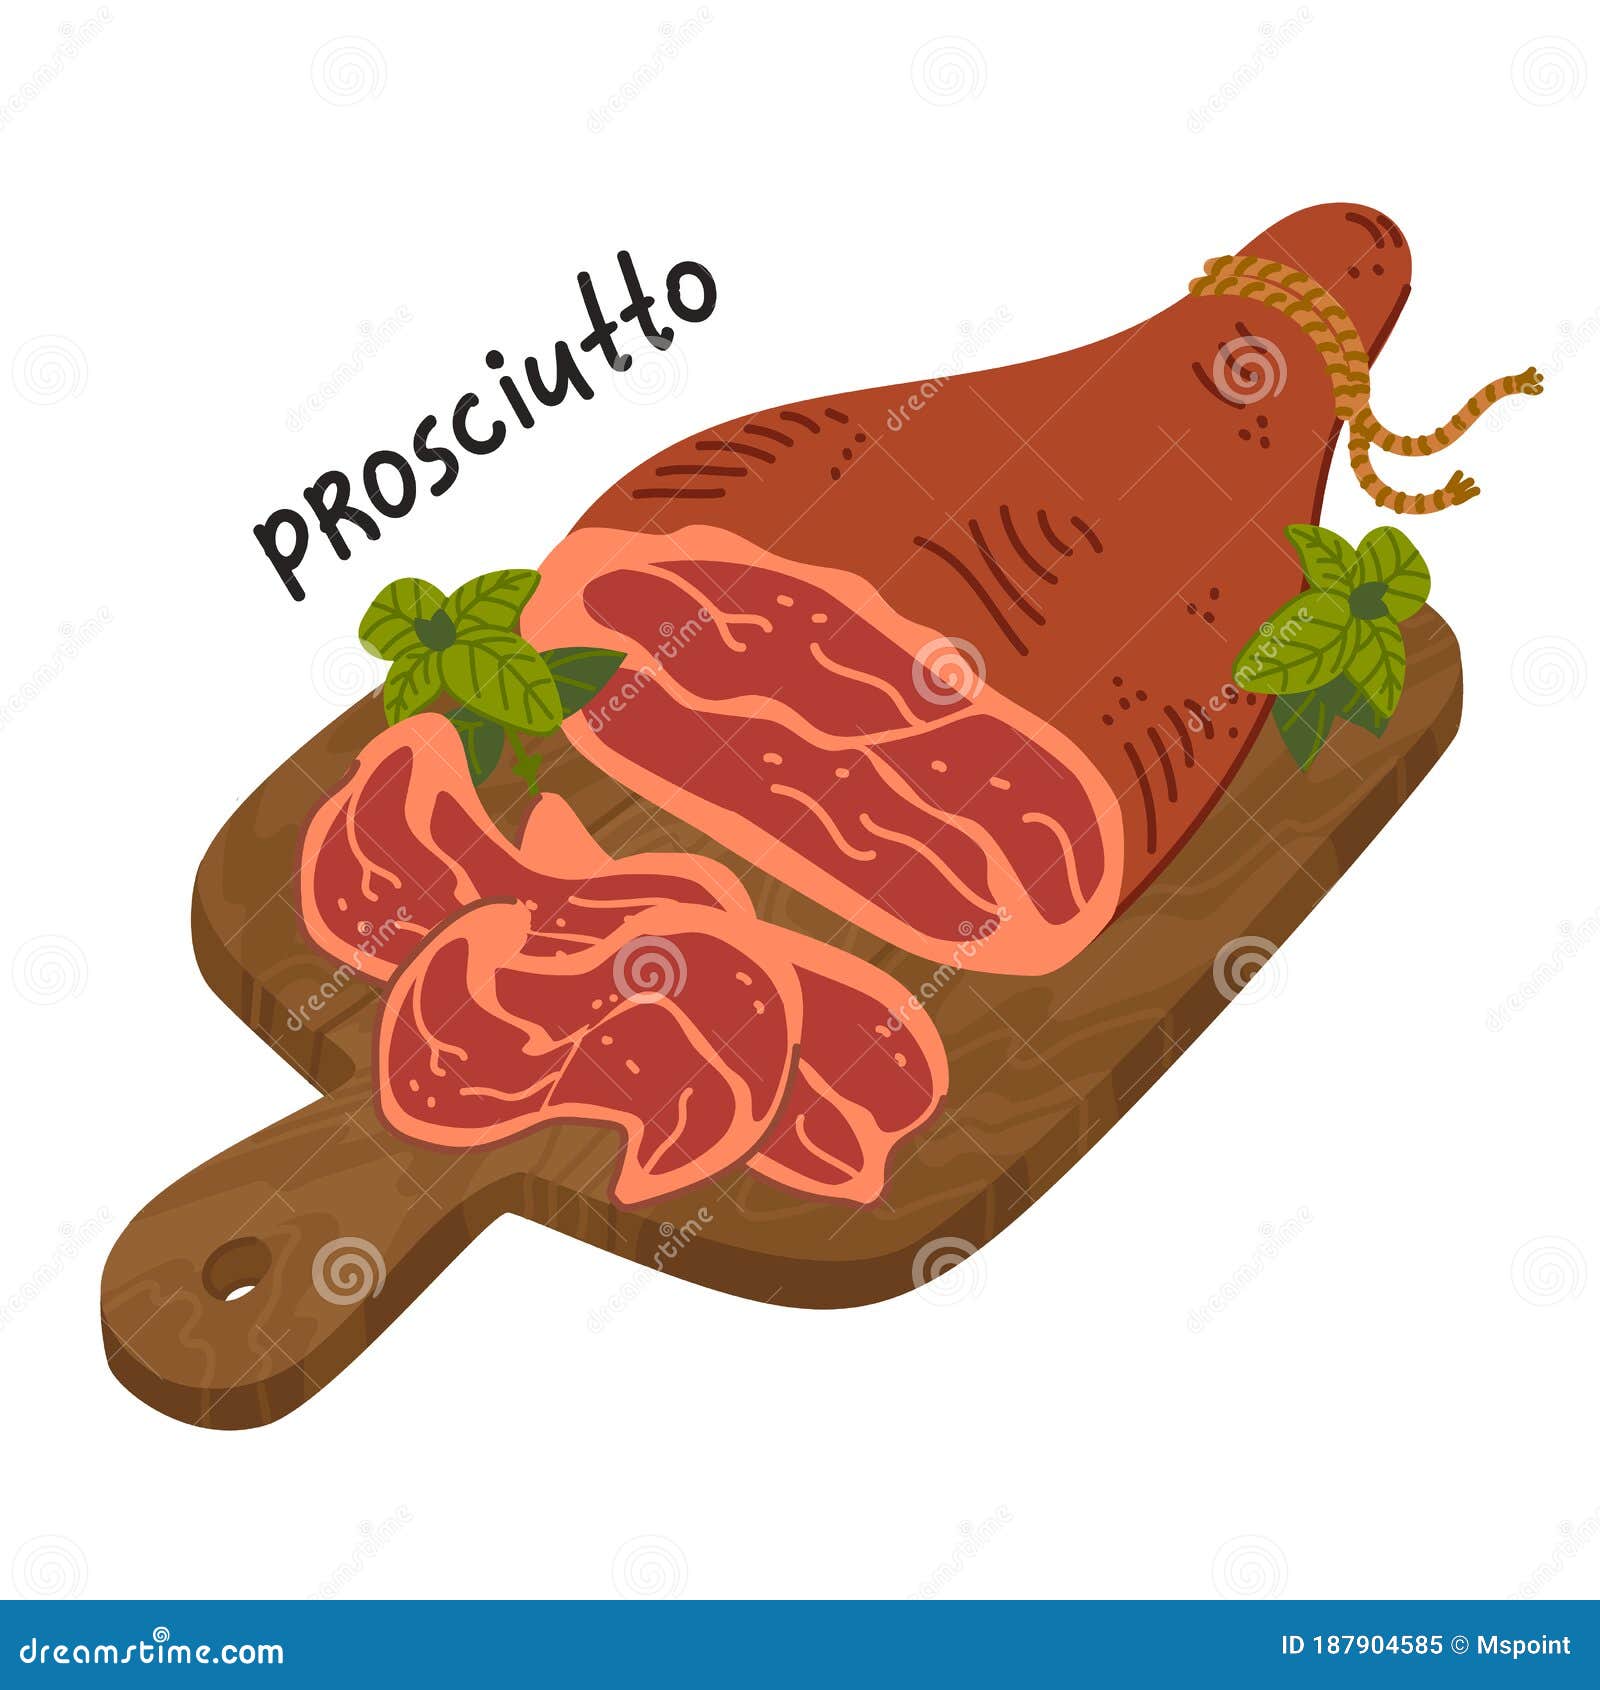 prosciutto crudo. meat delicatessen on a wooden cutting board.